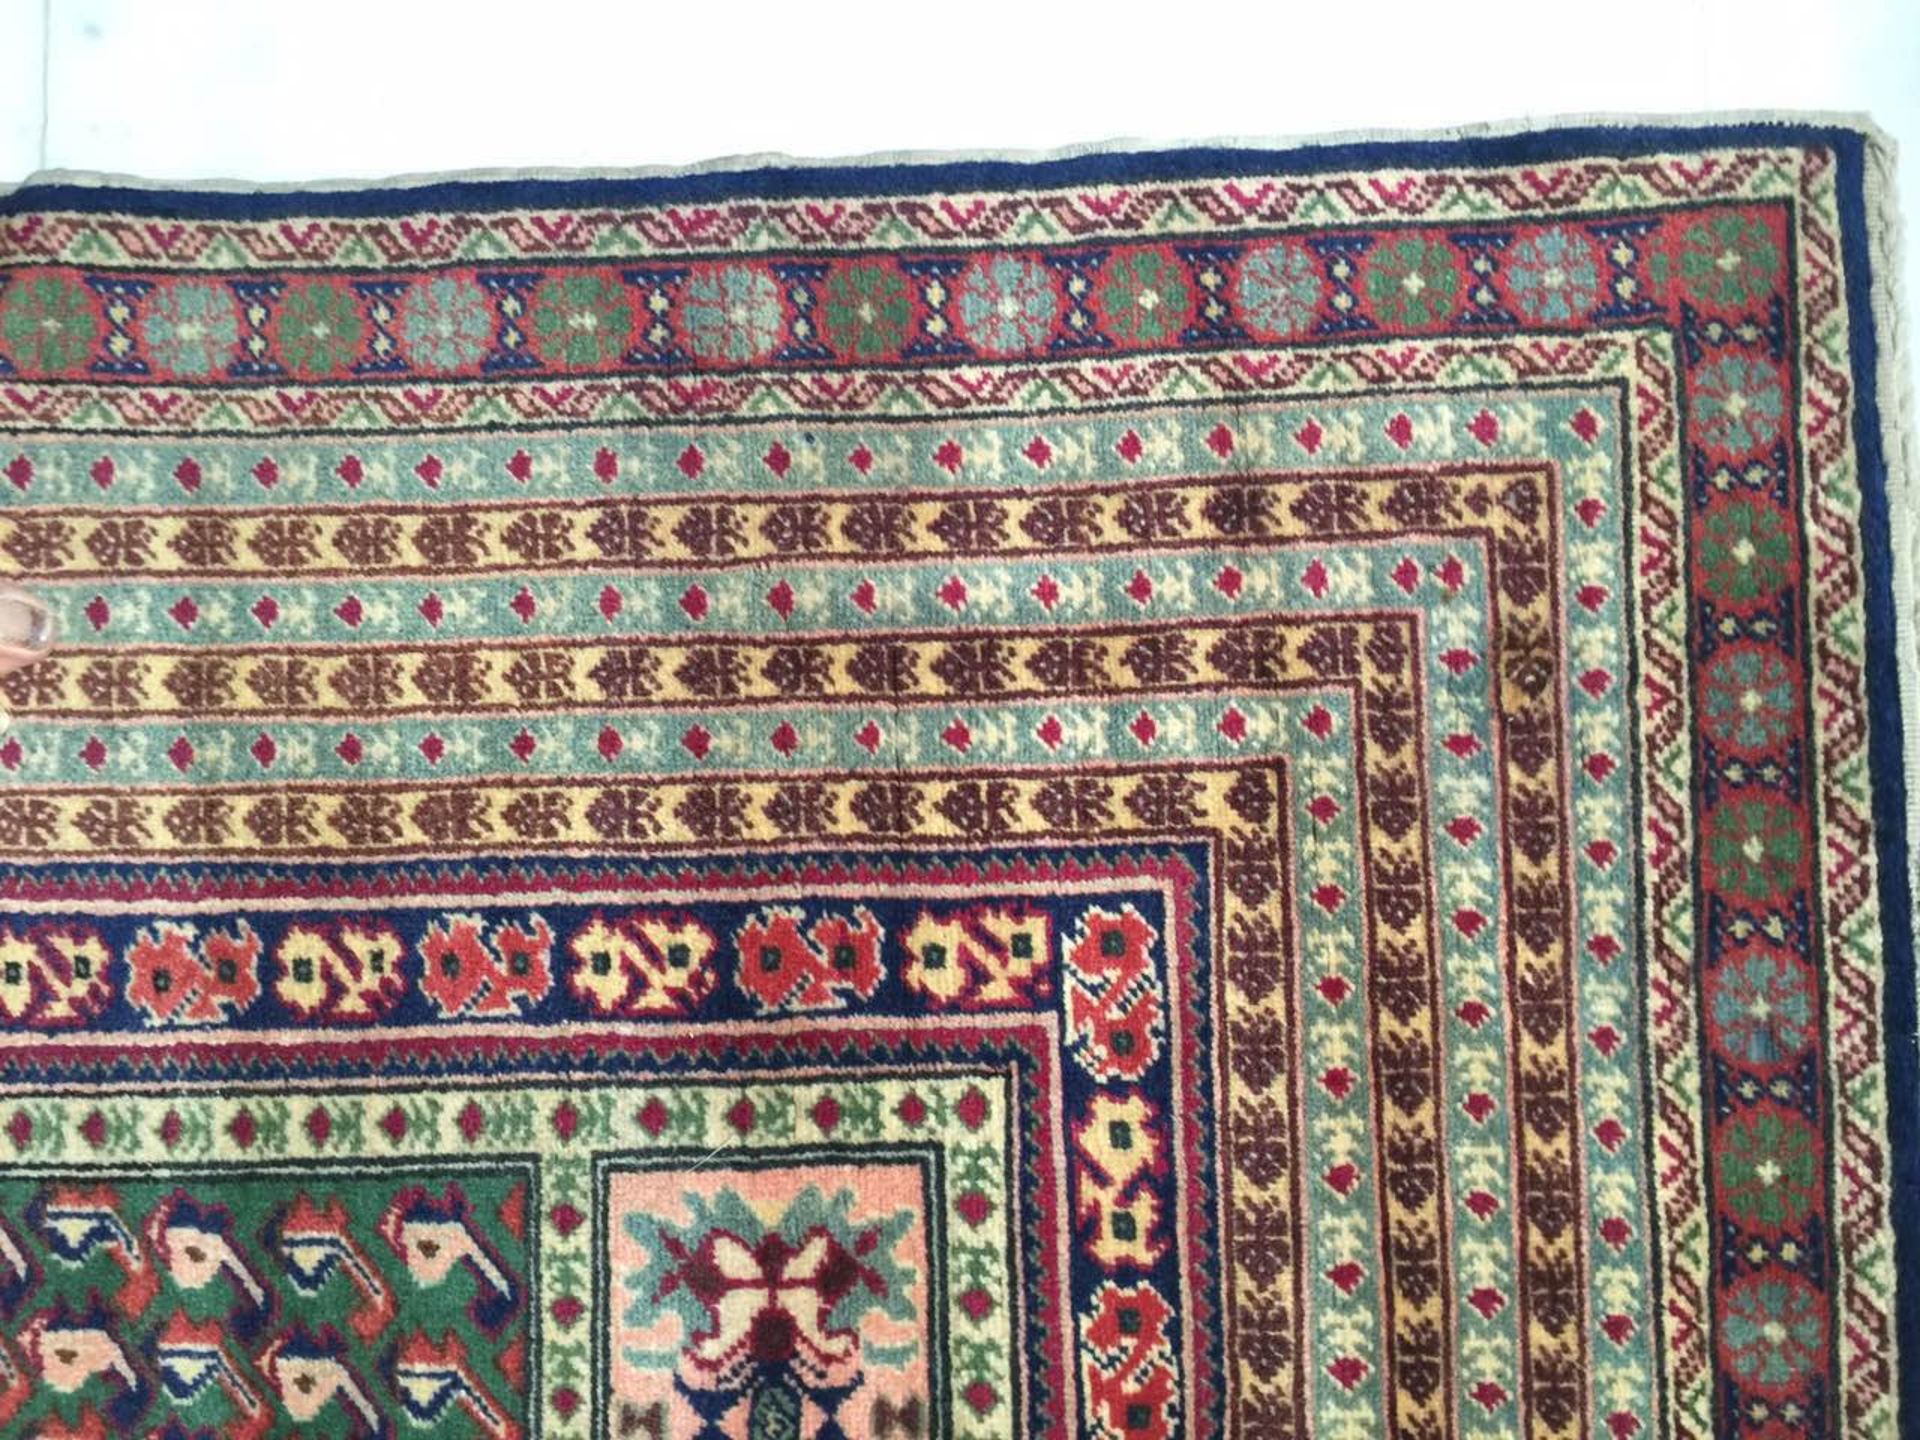 Tapis en laine anatolie turc 210 x 120 cm - Image 4 of 5